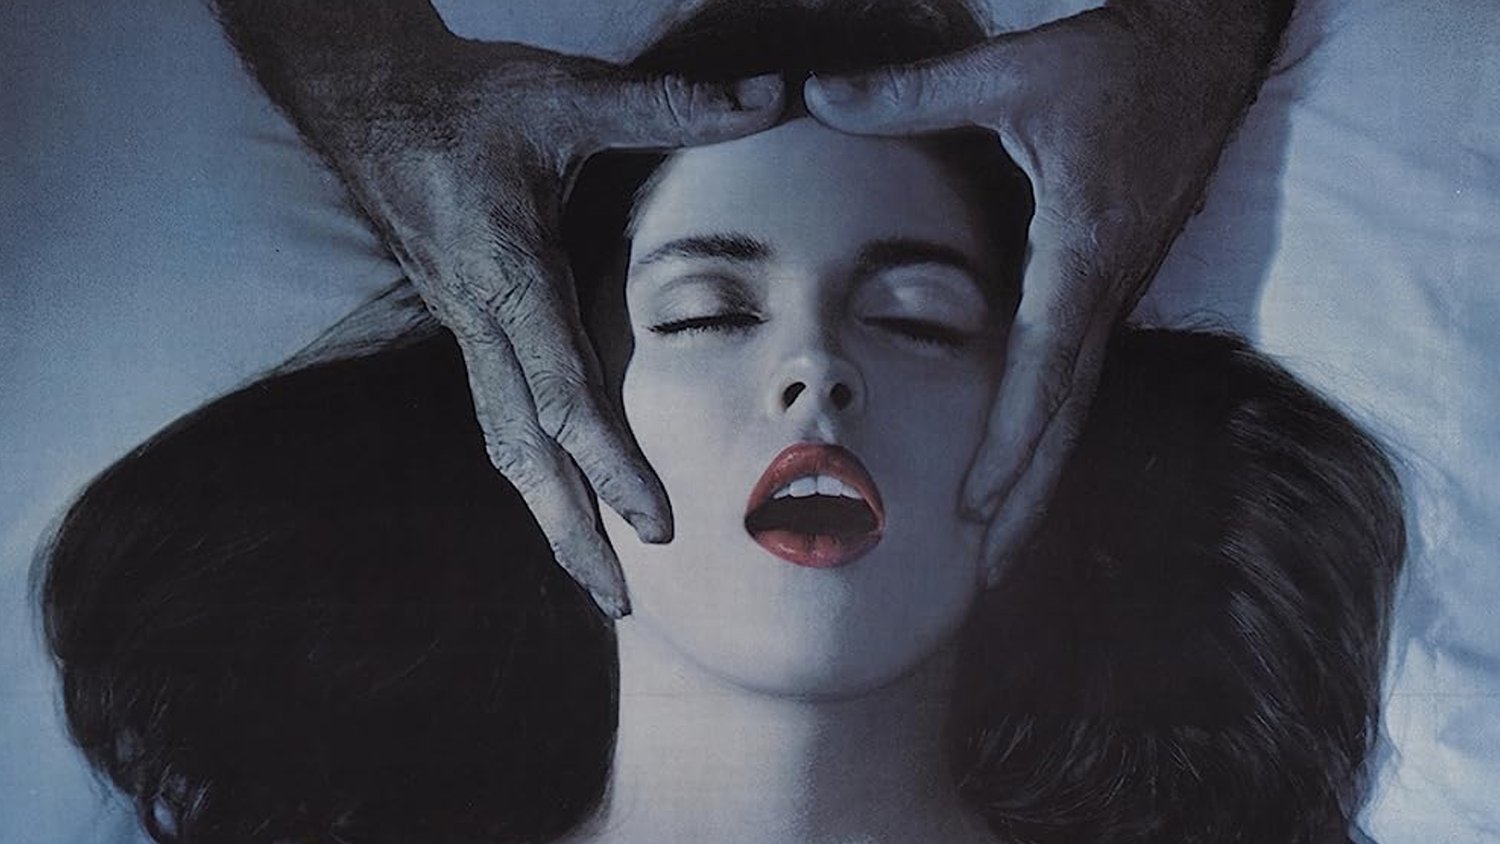 Bande-annonce du film d’horreur amish de 1981 de Wes Craven DEADLY BLESSING avec Ernest Borgnine et Sharon Stone